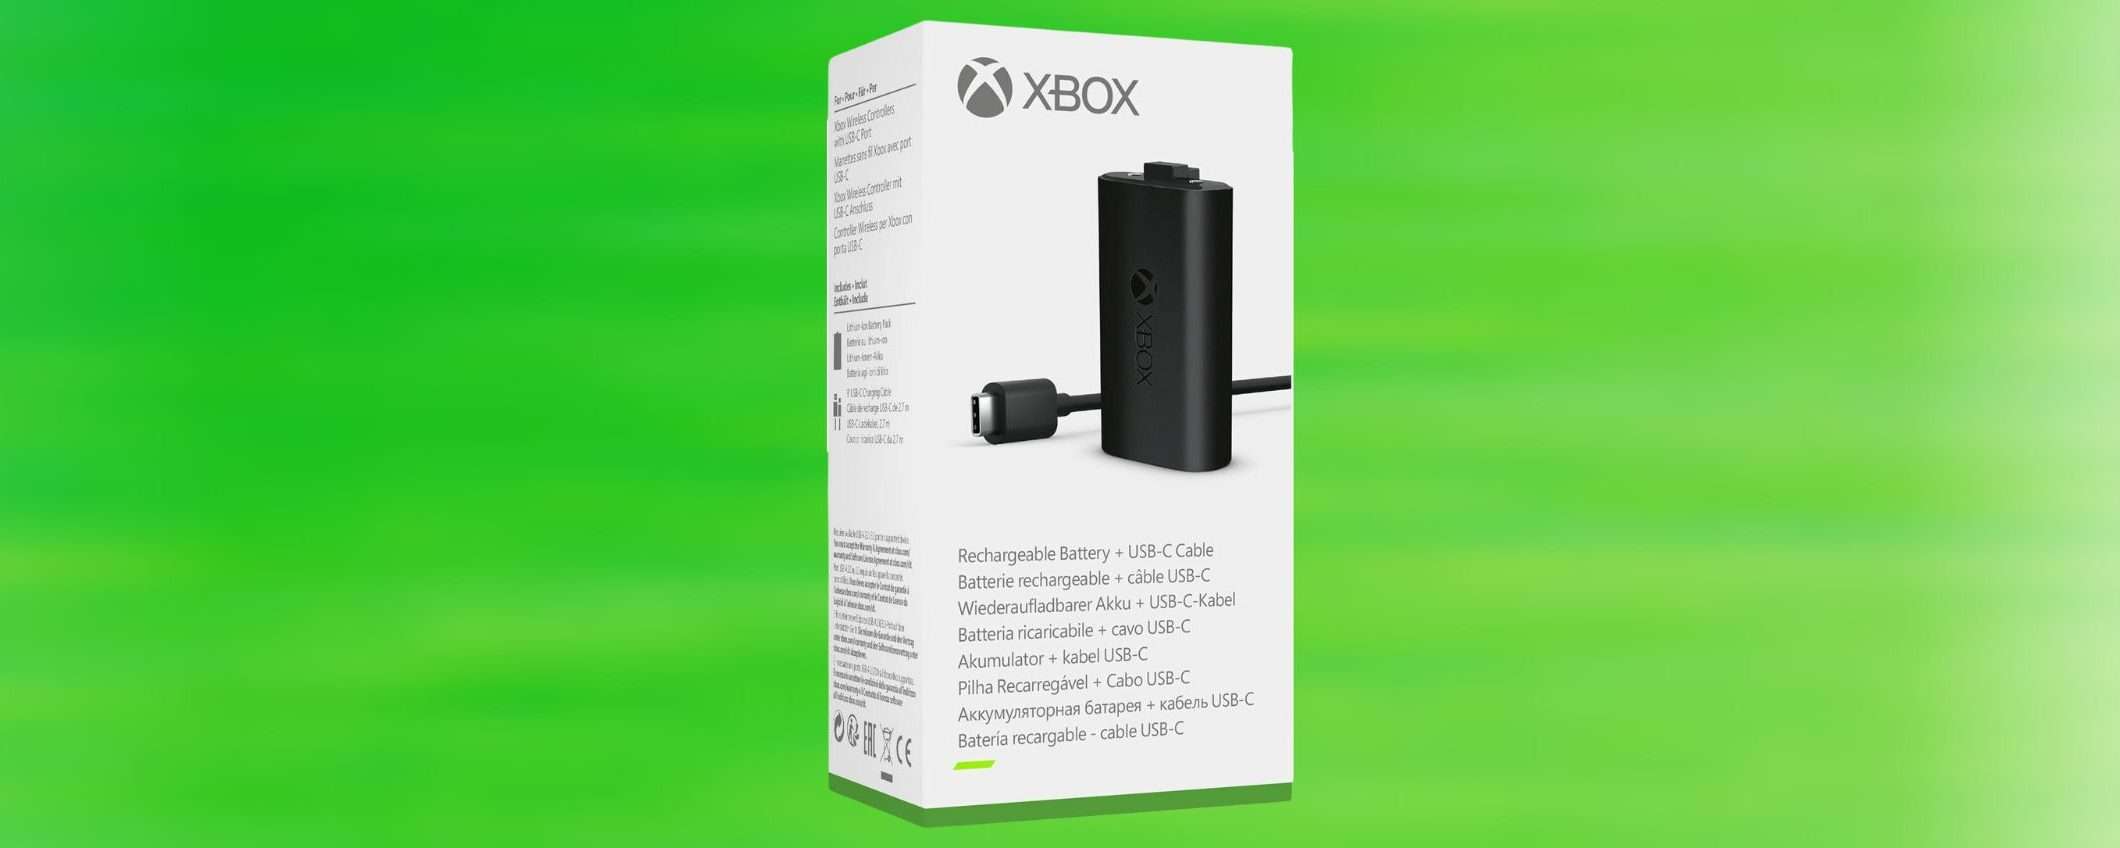 Con il kit Play and Charge di Xbox in offerta su Amazon dici ADDIO alle batterie scariche